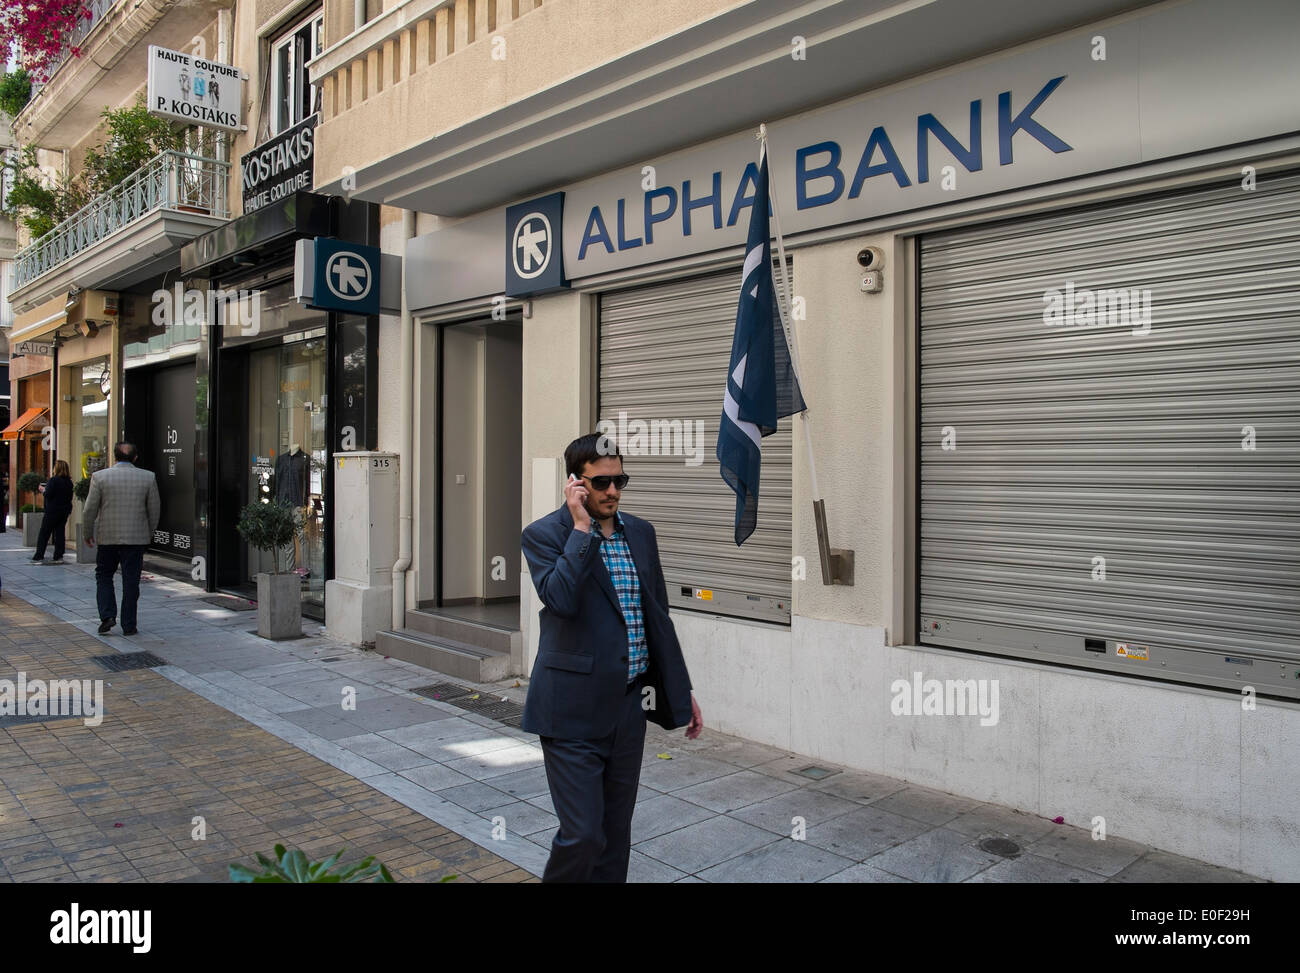 alpha bank cash money dispenser person bank greece Stock Photo